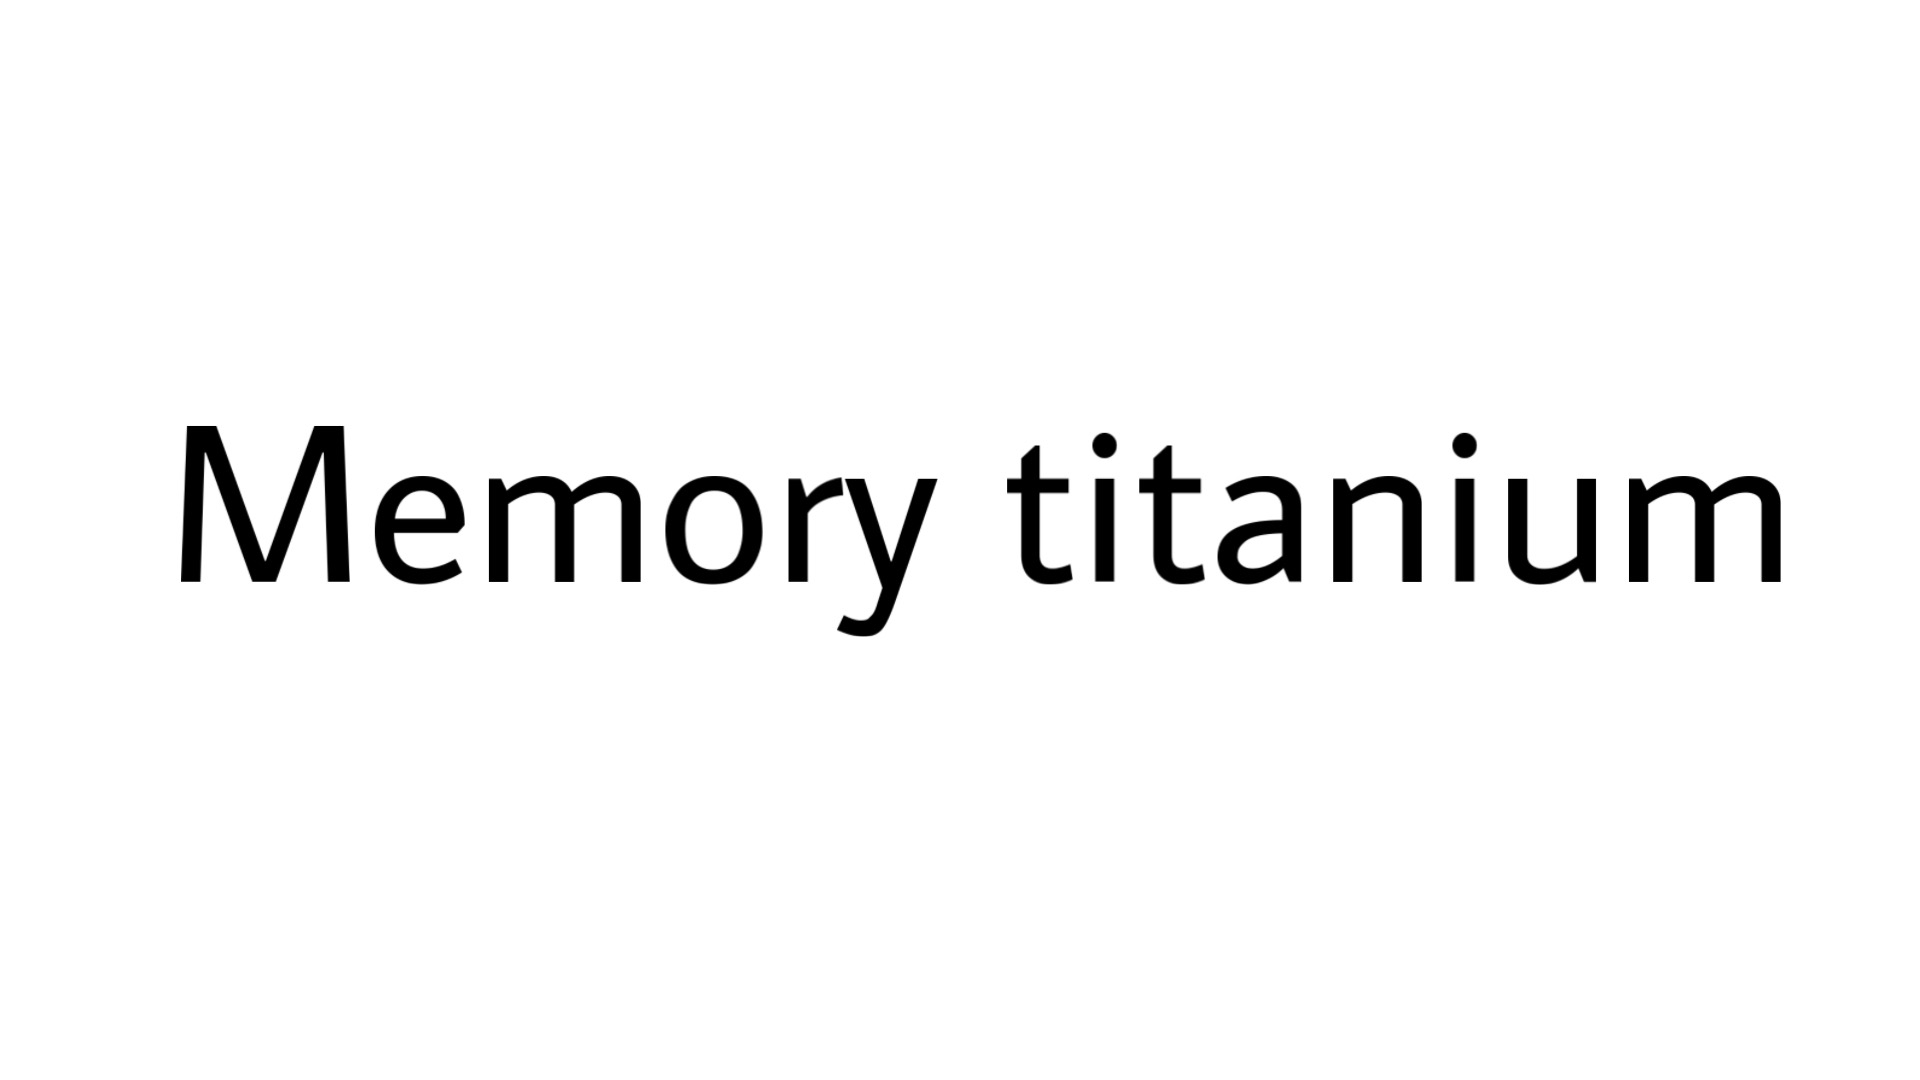 Memory titanium